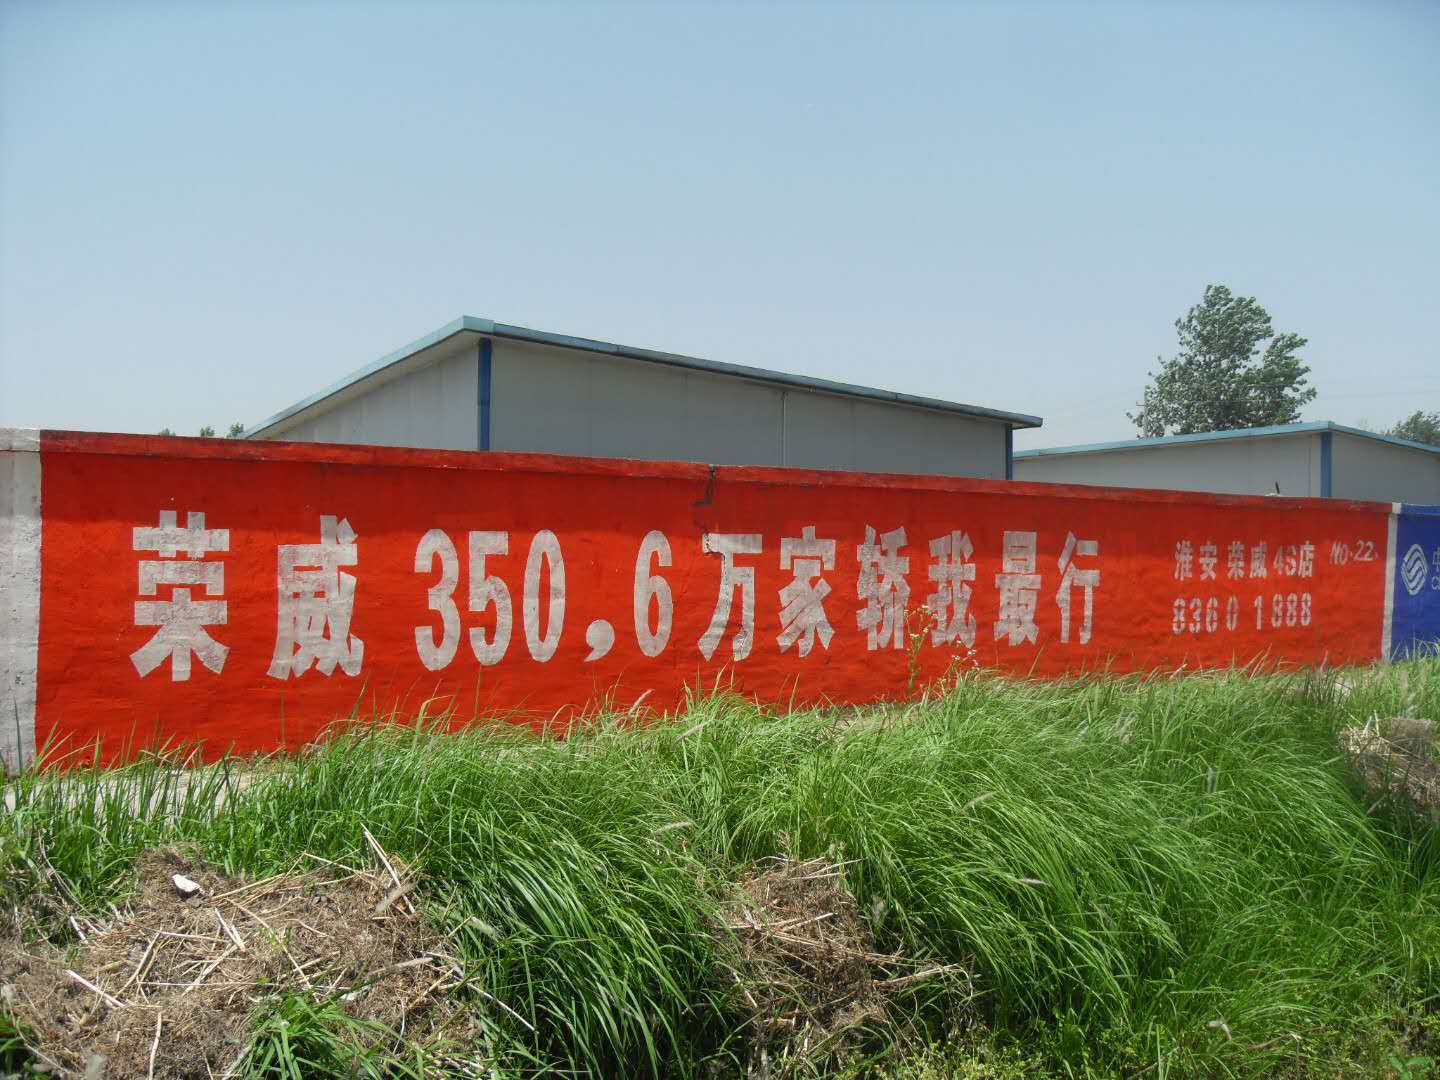 淮安专业墙体广告 墙绘公司 专业制作商业墙体广告及各种环氧地坪